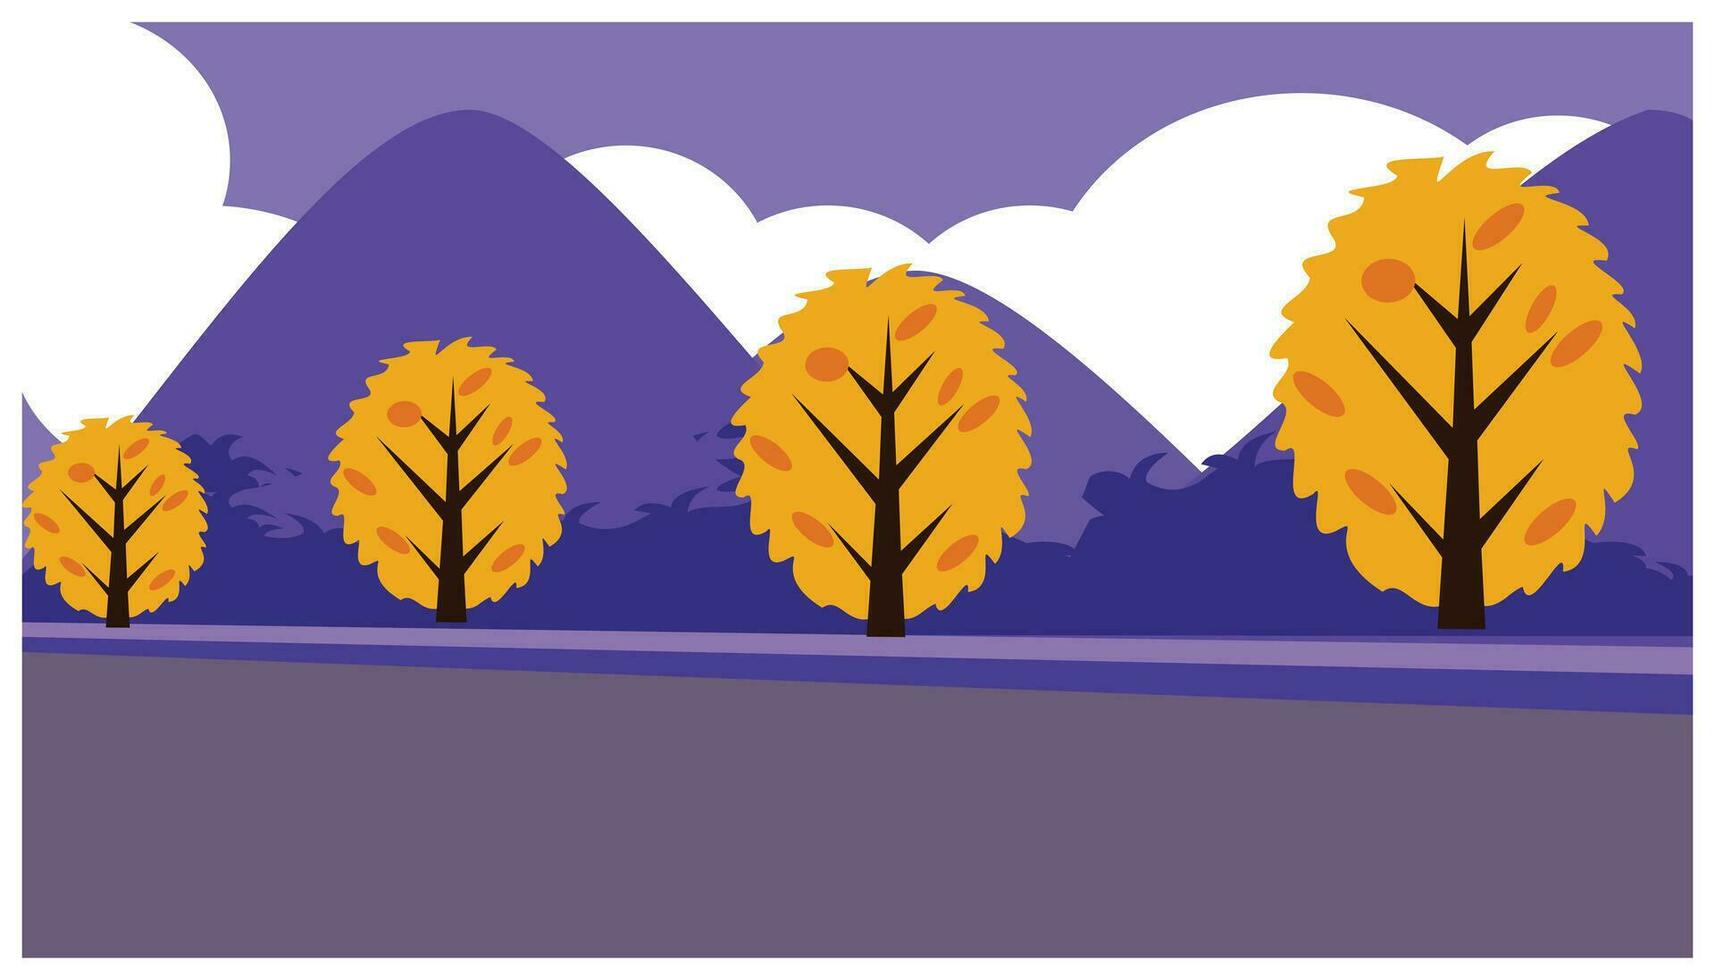 höst landskap med träd och berg. vektor illustration i platt stil. landskap av bergen och moln i lila toner